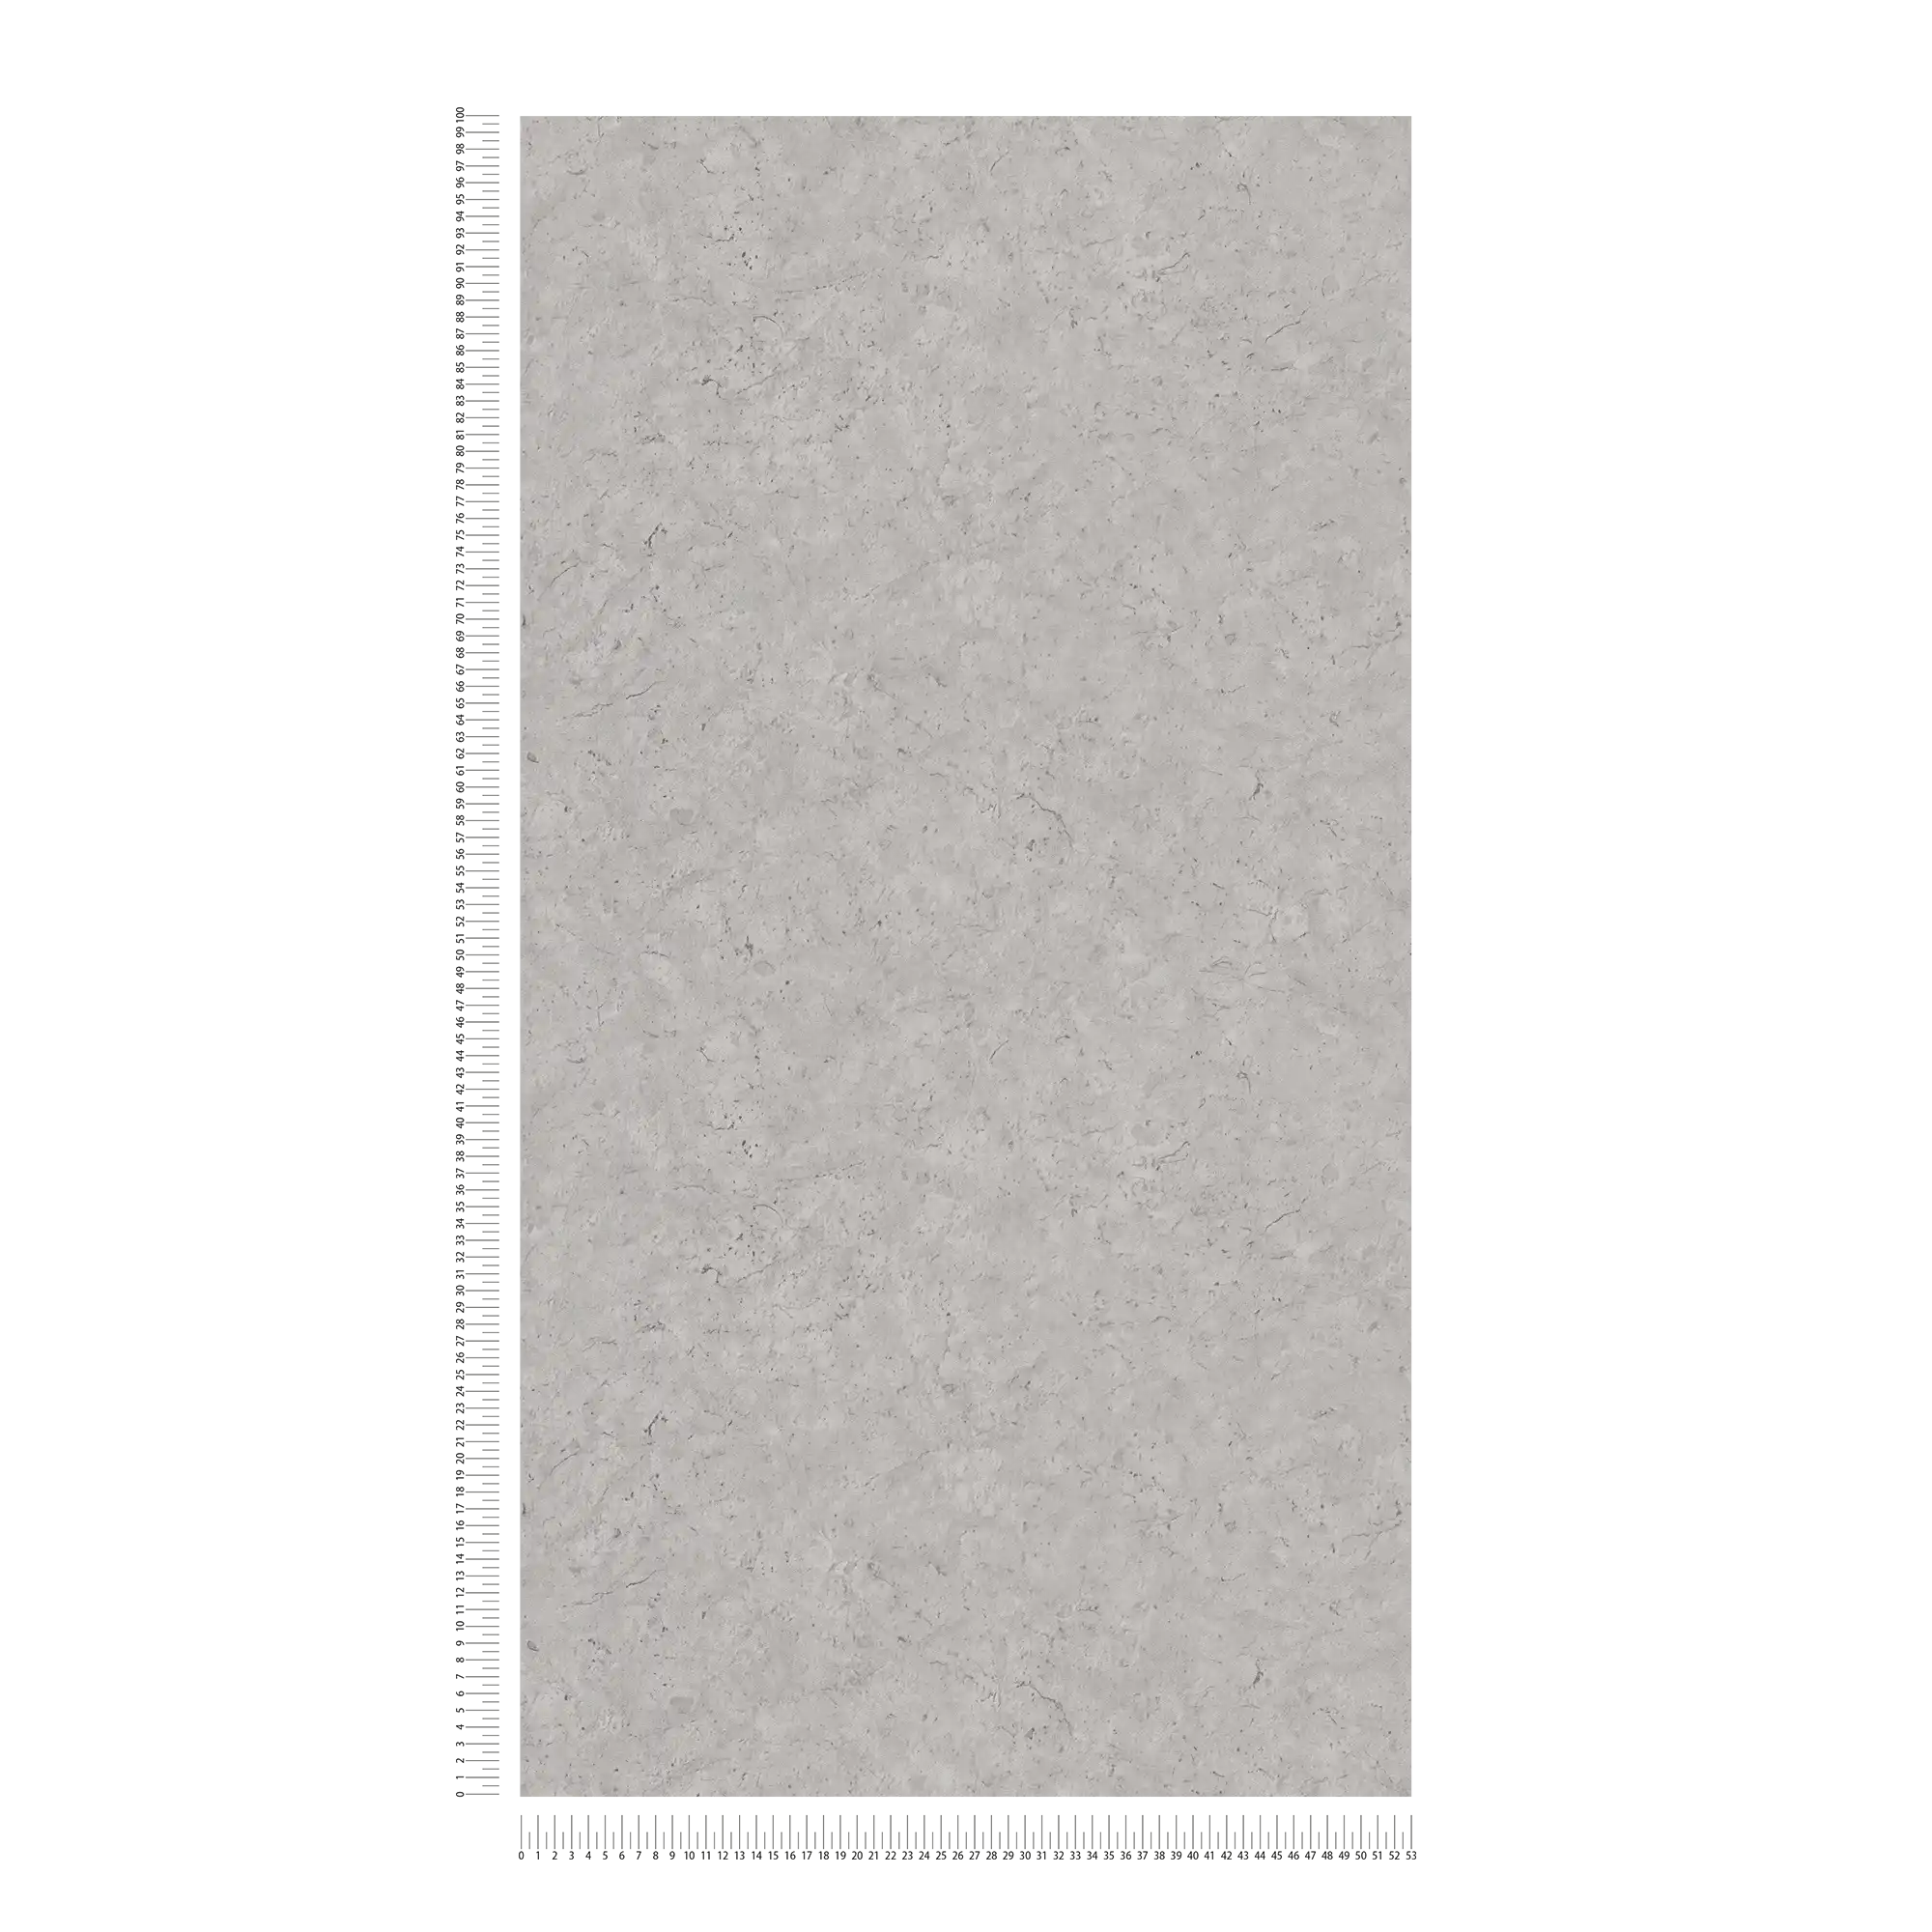             Carta da parati effetto cemento con motivo discreto - grigio
        